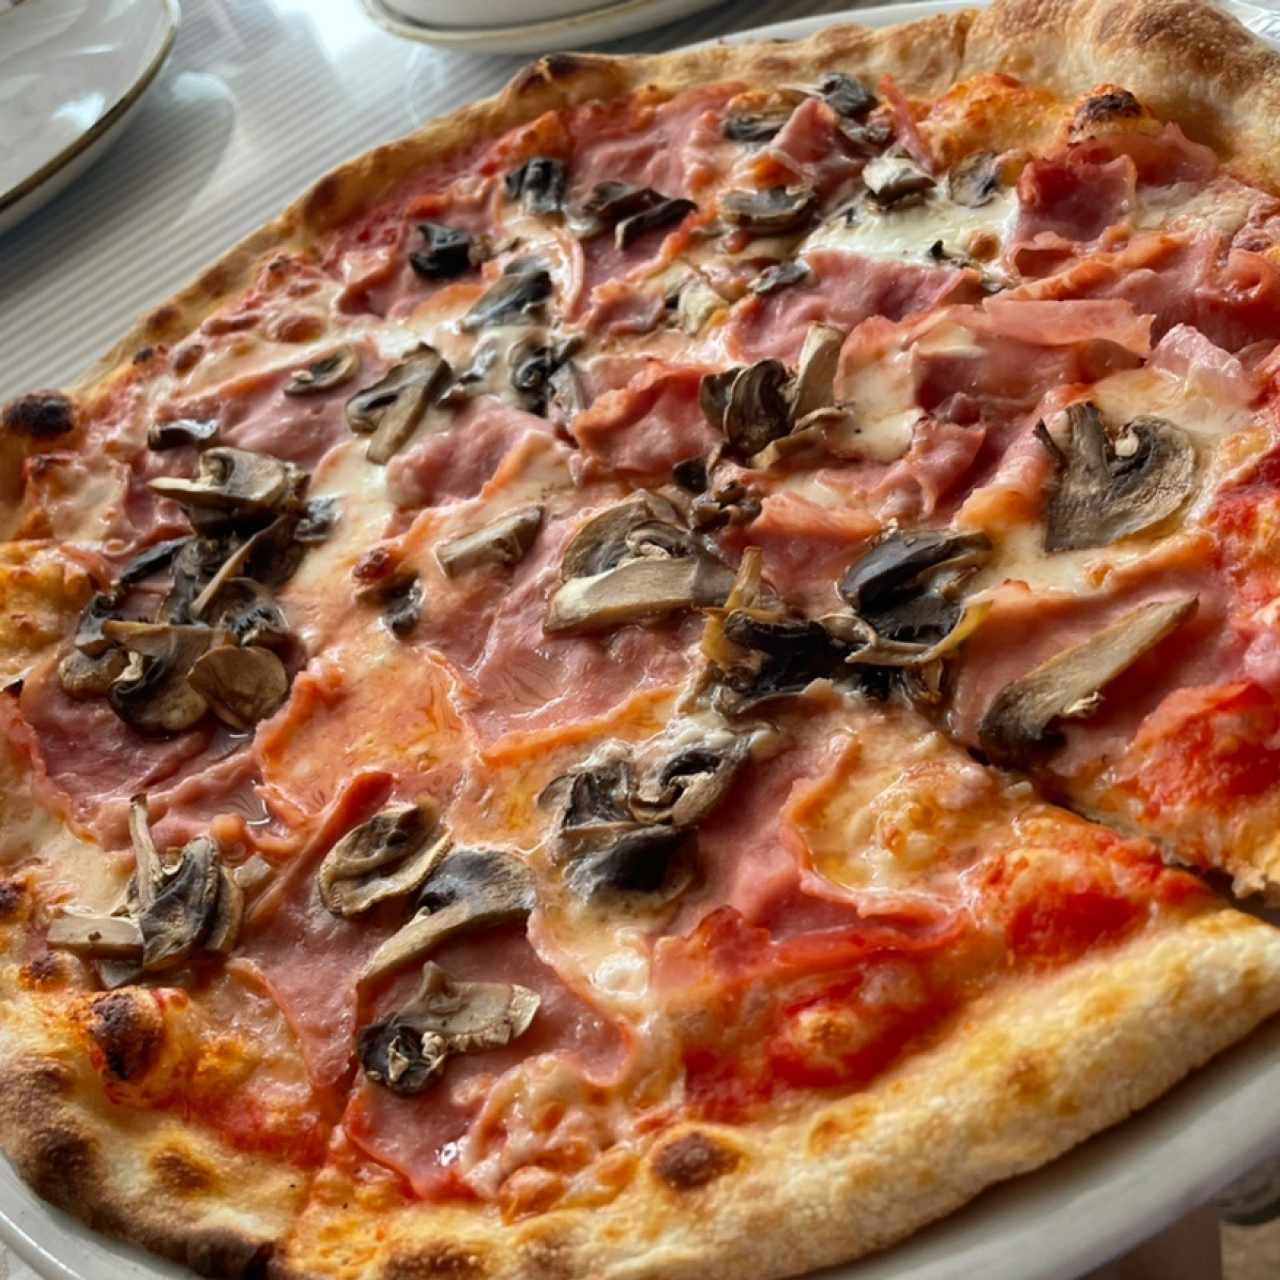 Pizza Tradizionale - Prosciutto e Funghi